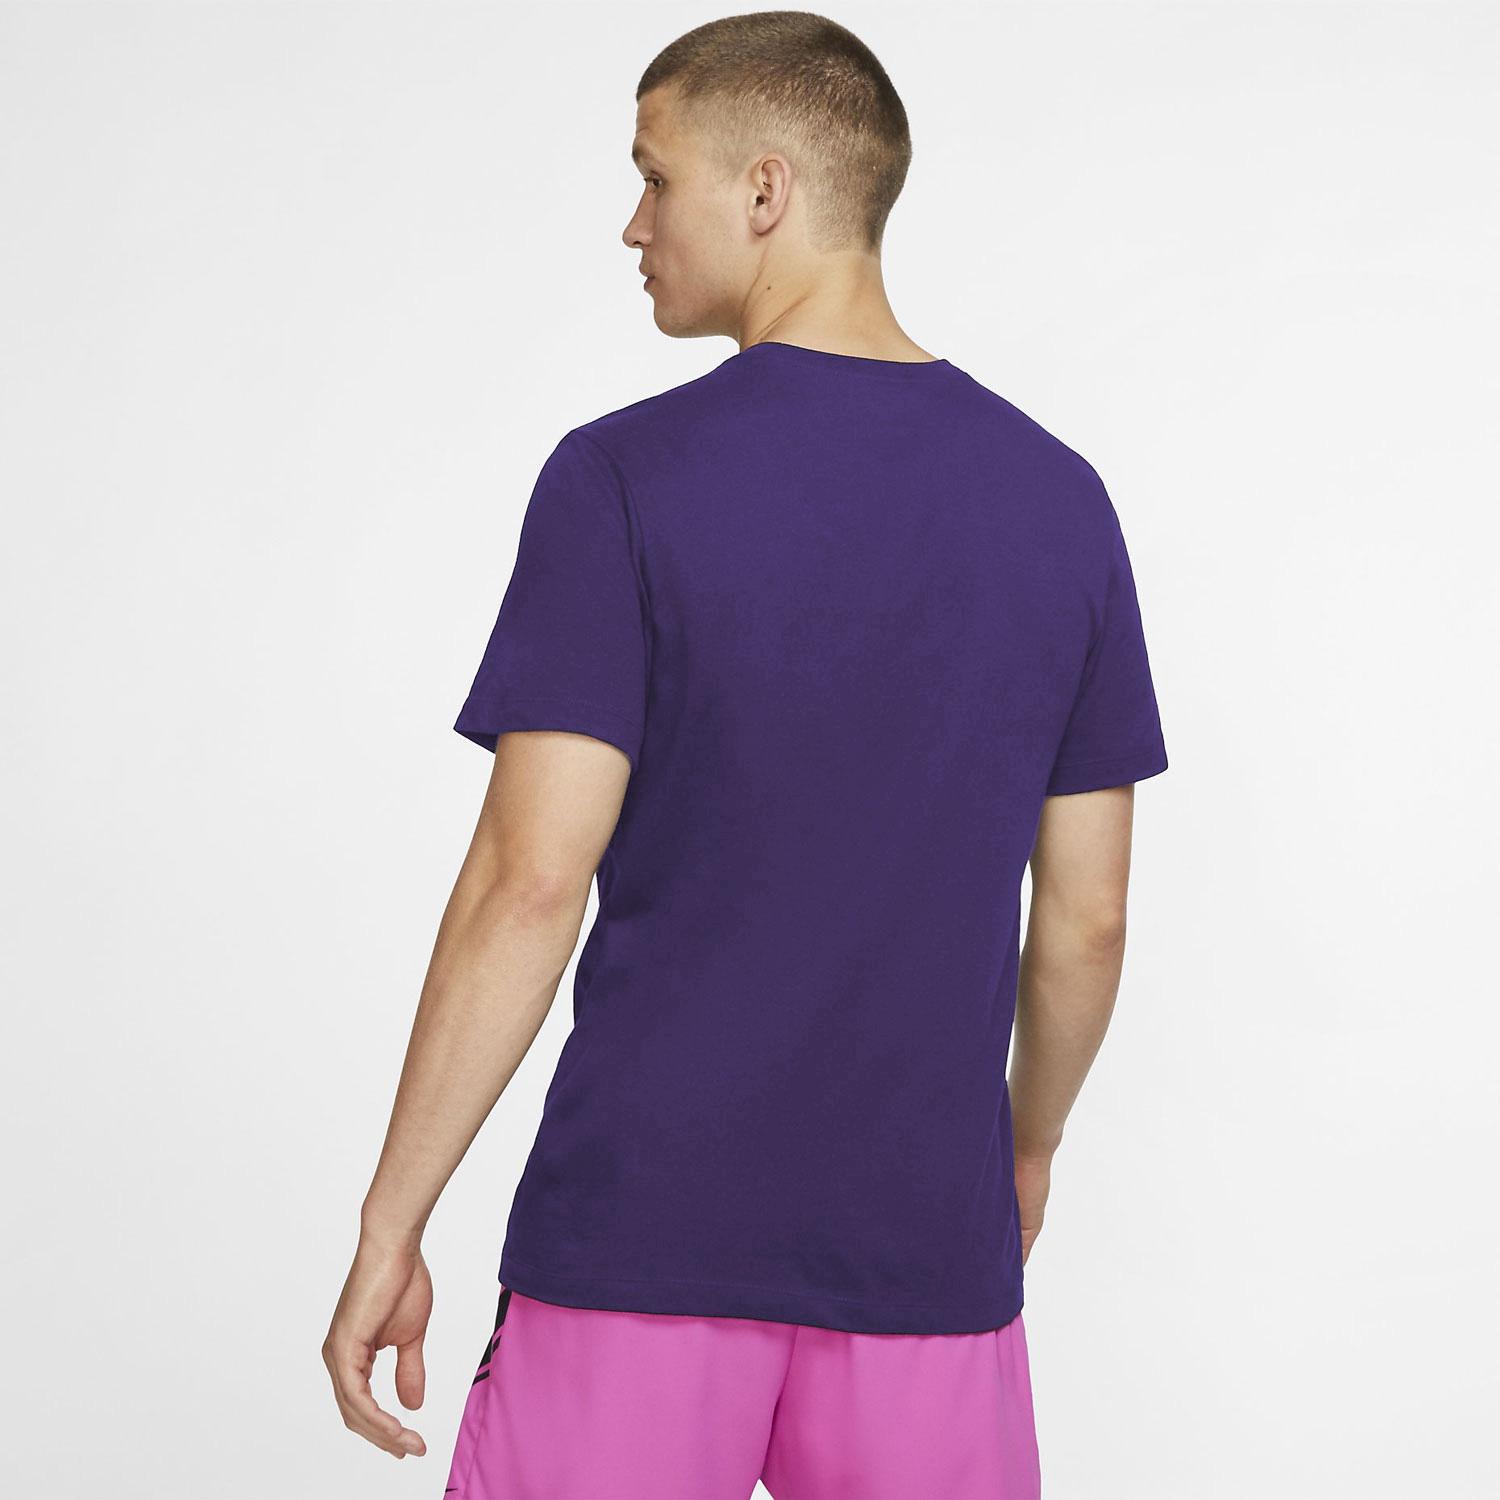 Nike Mens Dri-FIT Tennis T-Shirt - Court Purple - Tennisnuts.com